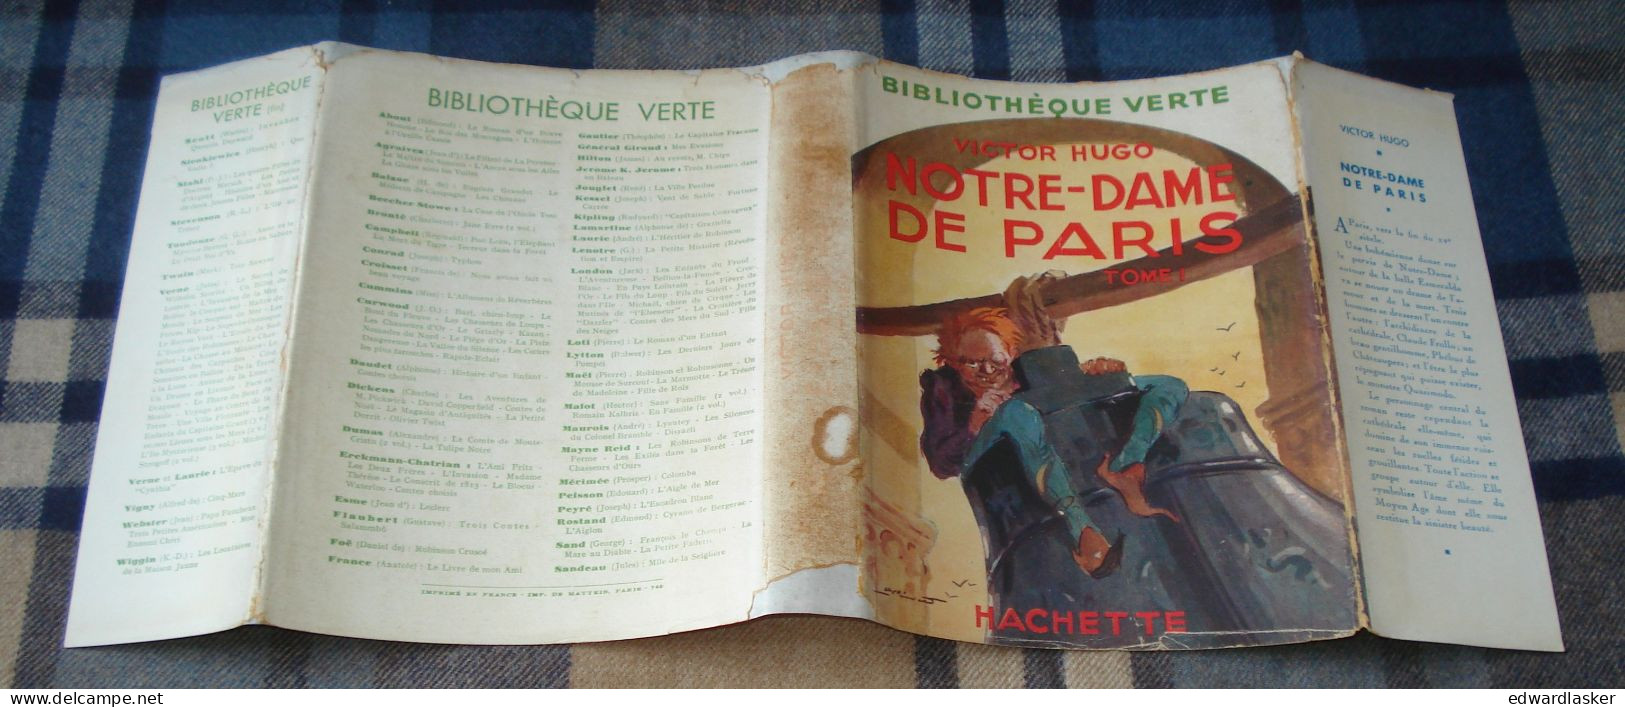 BIBLIOTHEQUE VERTE : Notre-Dame de Paris (tome 1) /Victor Hugo - jaquette 1950 - André Pécoud